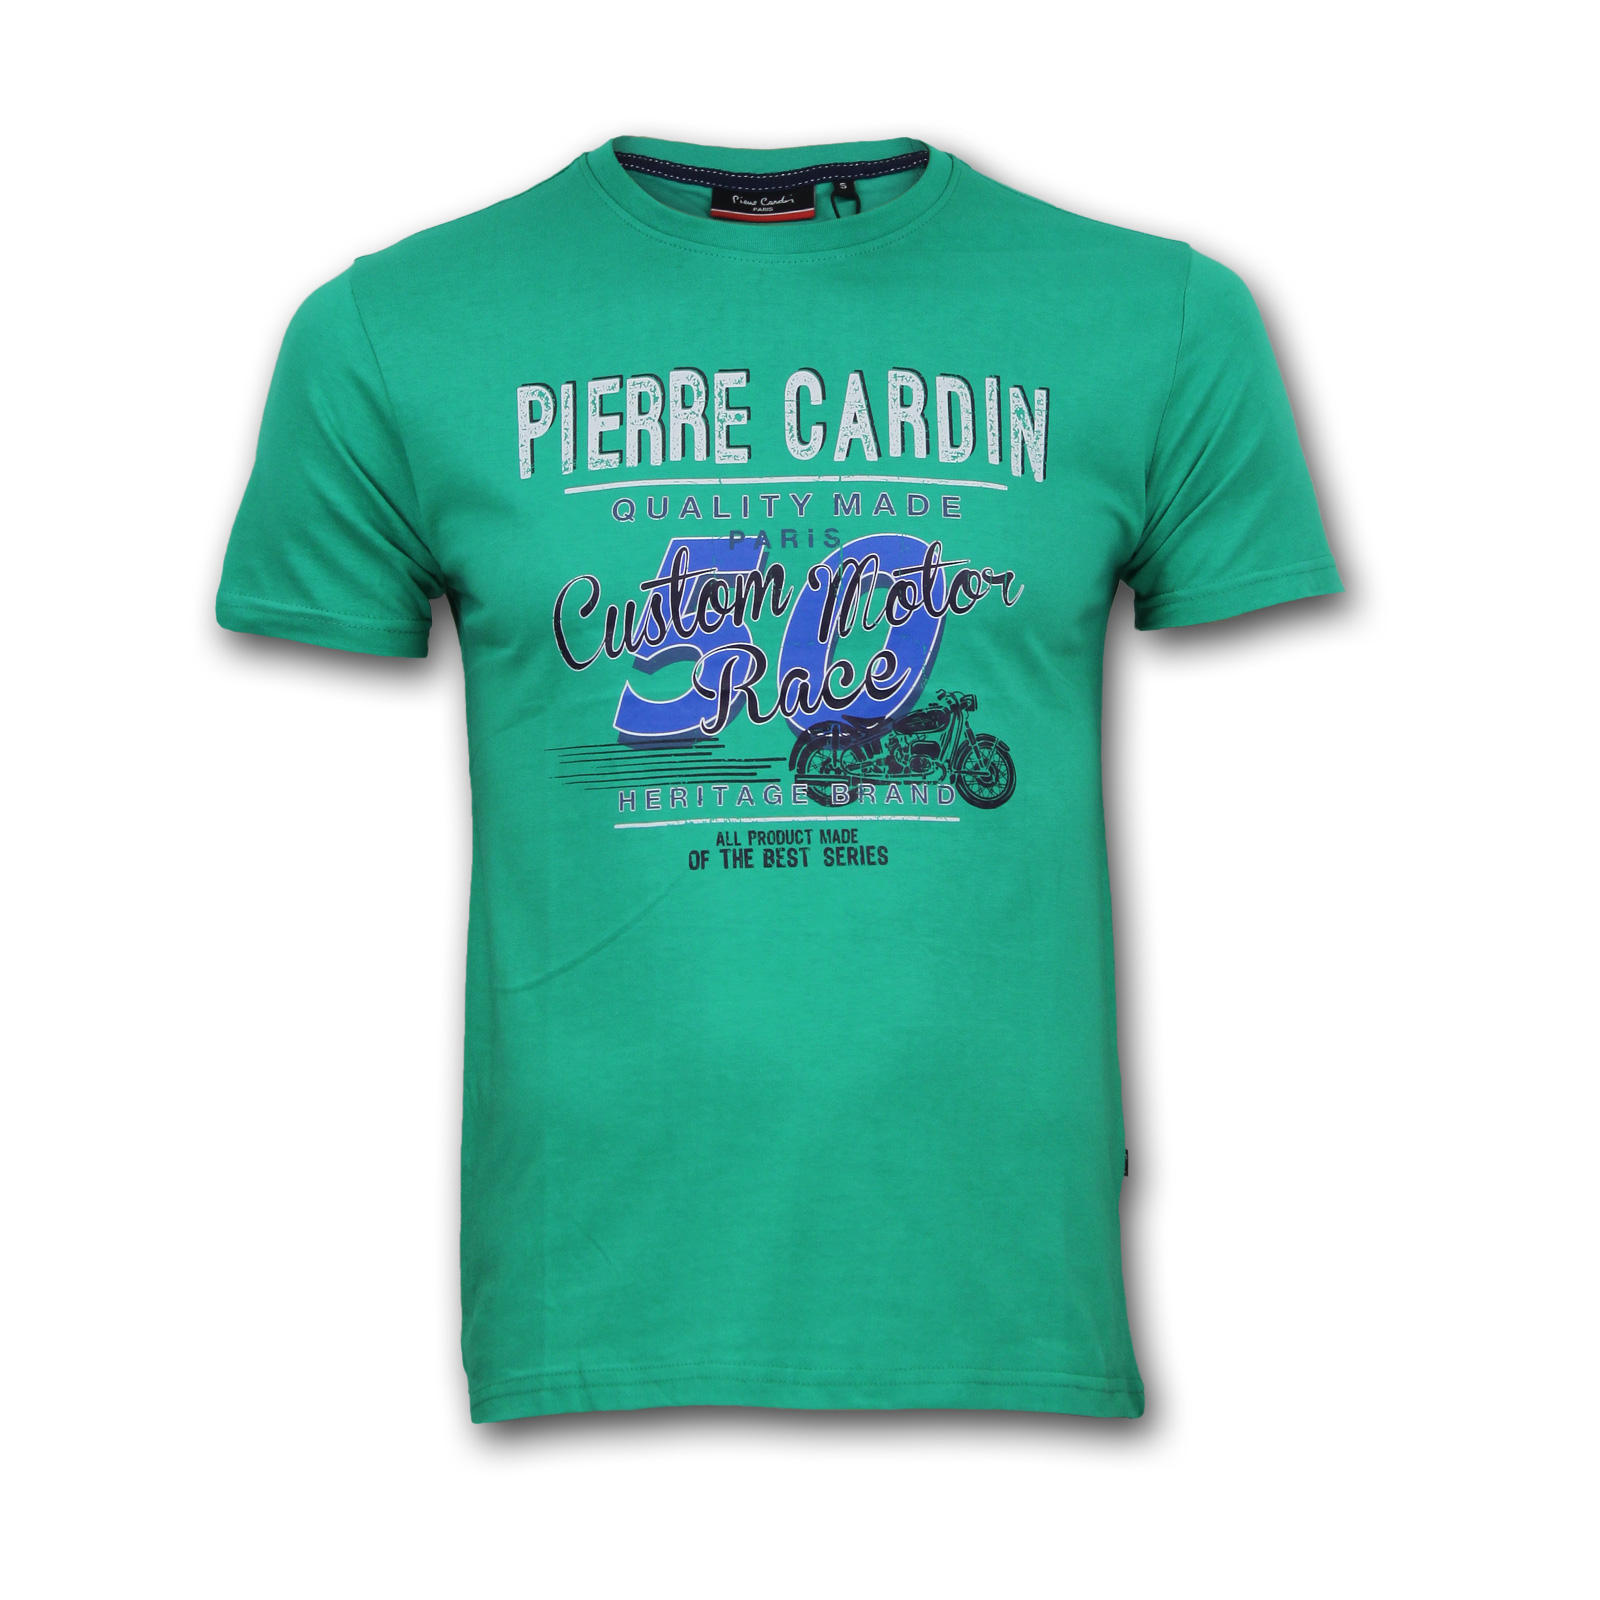 Pierre Cardin T-Shirt Herren TShirt T shirt Tee Kurzarm Rundhals Freizeit 4199 